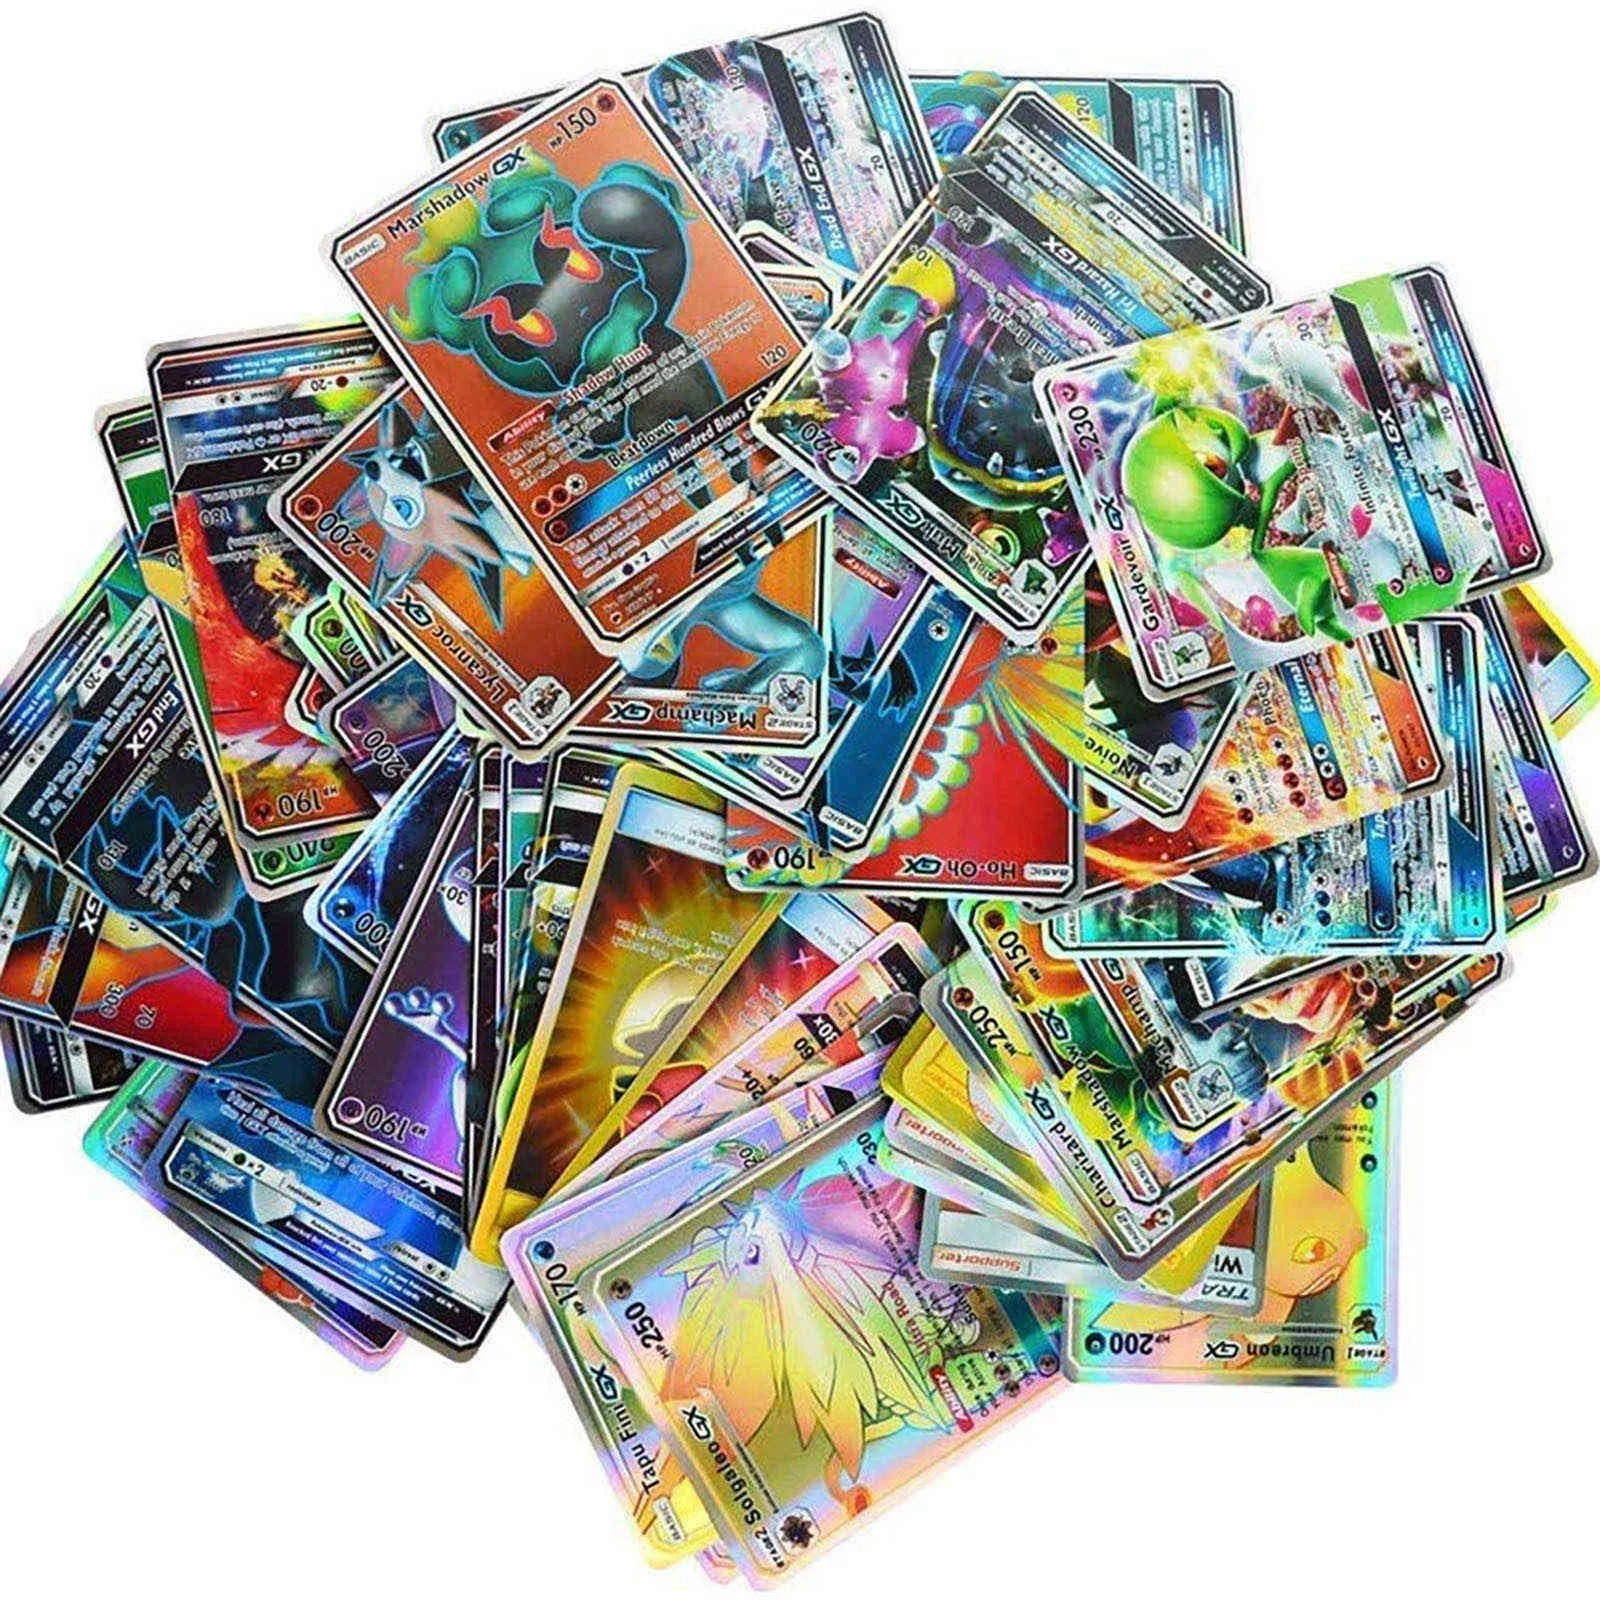 60 قطع كاملة gx نسخة النسخة الفرنسية حزمة حزمة 60 كاملة بطاقات mega، لعبة بطاقة، حفر بطاقة boite de games لعب بطاقة مجموعة الكرتون G1125